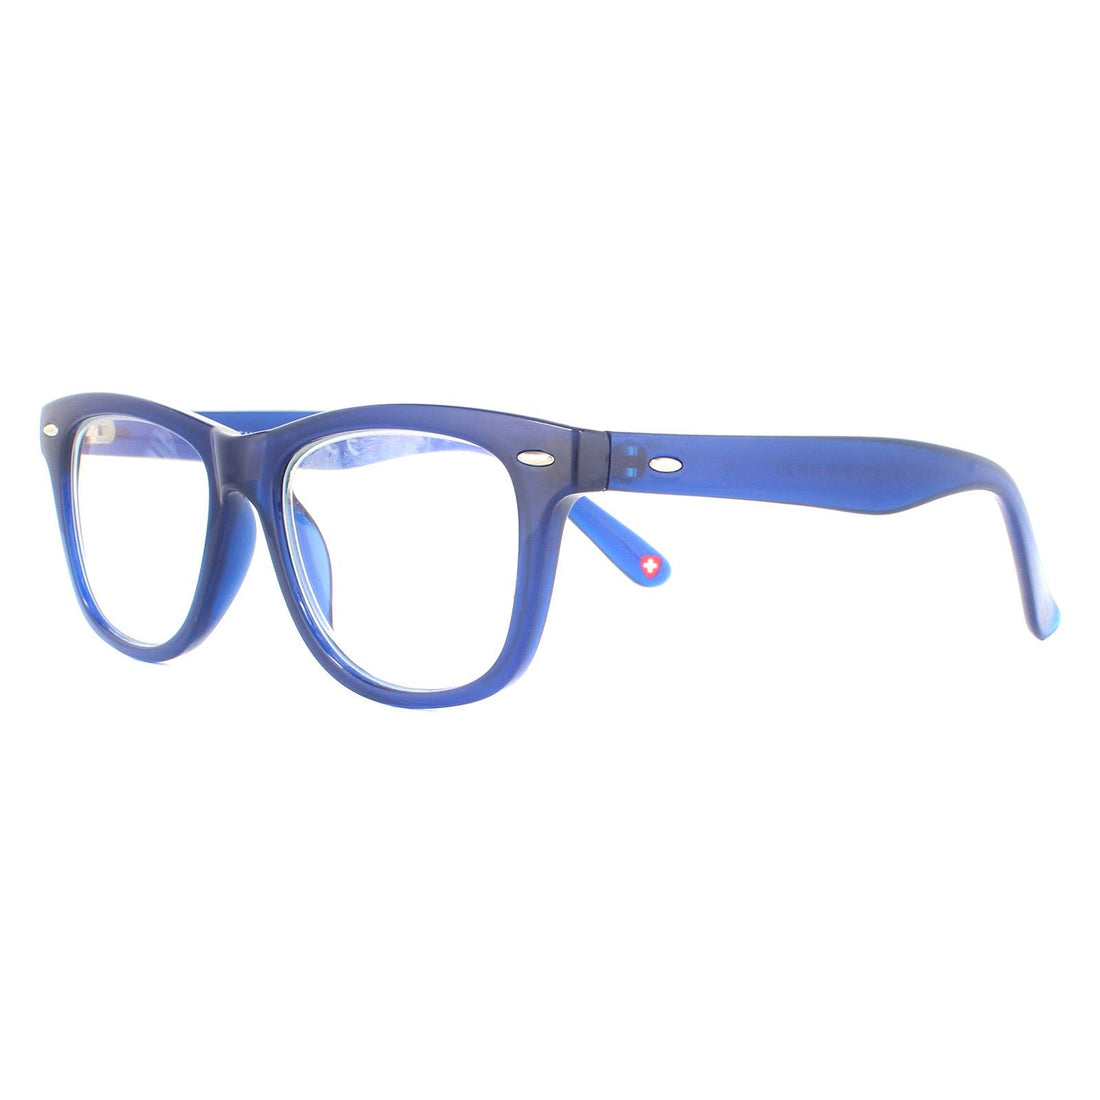 Montana Glasses Frames KBLF1 1B Blue Blue Light Block